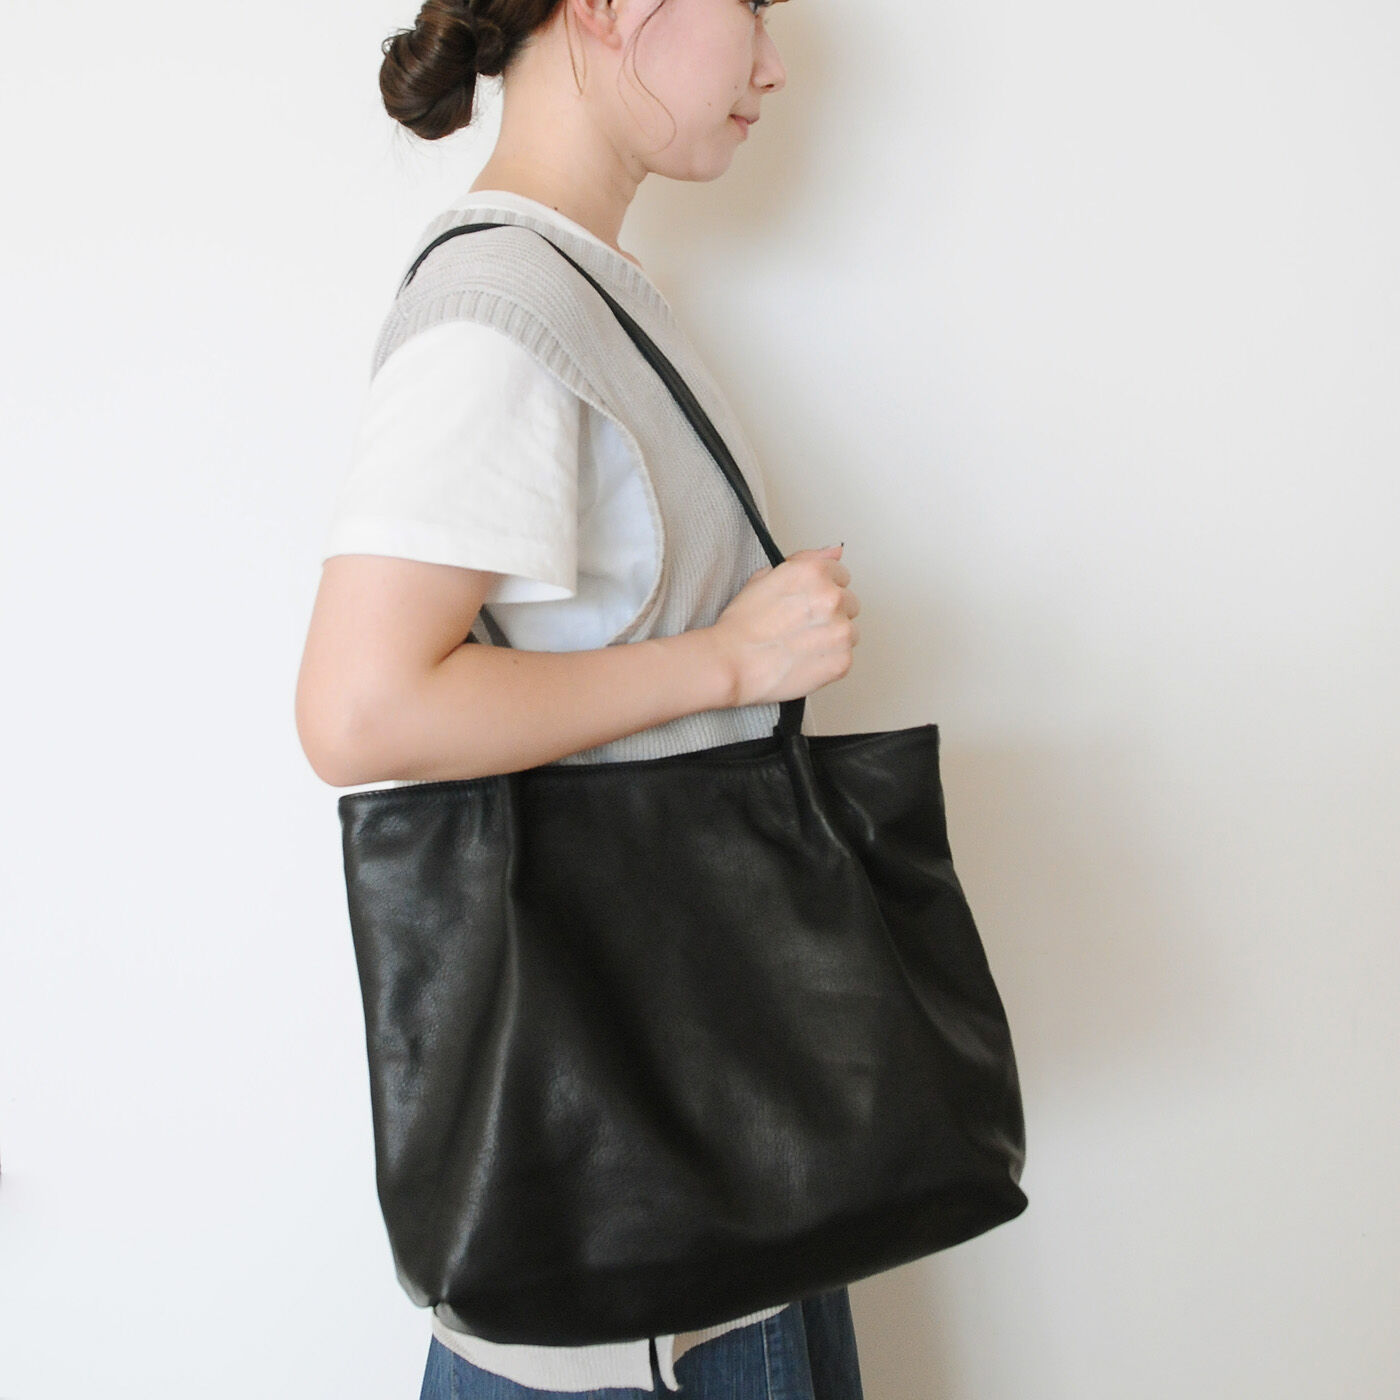 フェリシモコレクション|ブリリアンス神戸基金 KOBE PORT TOWER 福岡の鞄作家が作った 職人本革のカーポラヴォーロトート〈Black〉|細めの持ち手なのでスタイリッシュなコーデが楽しみます。